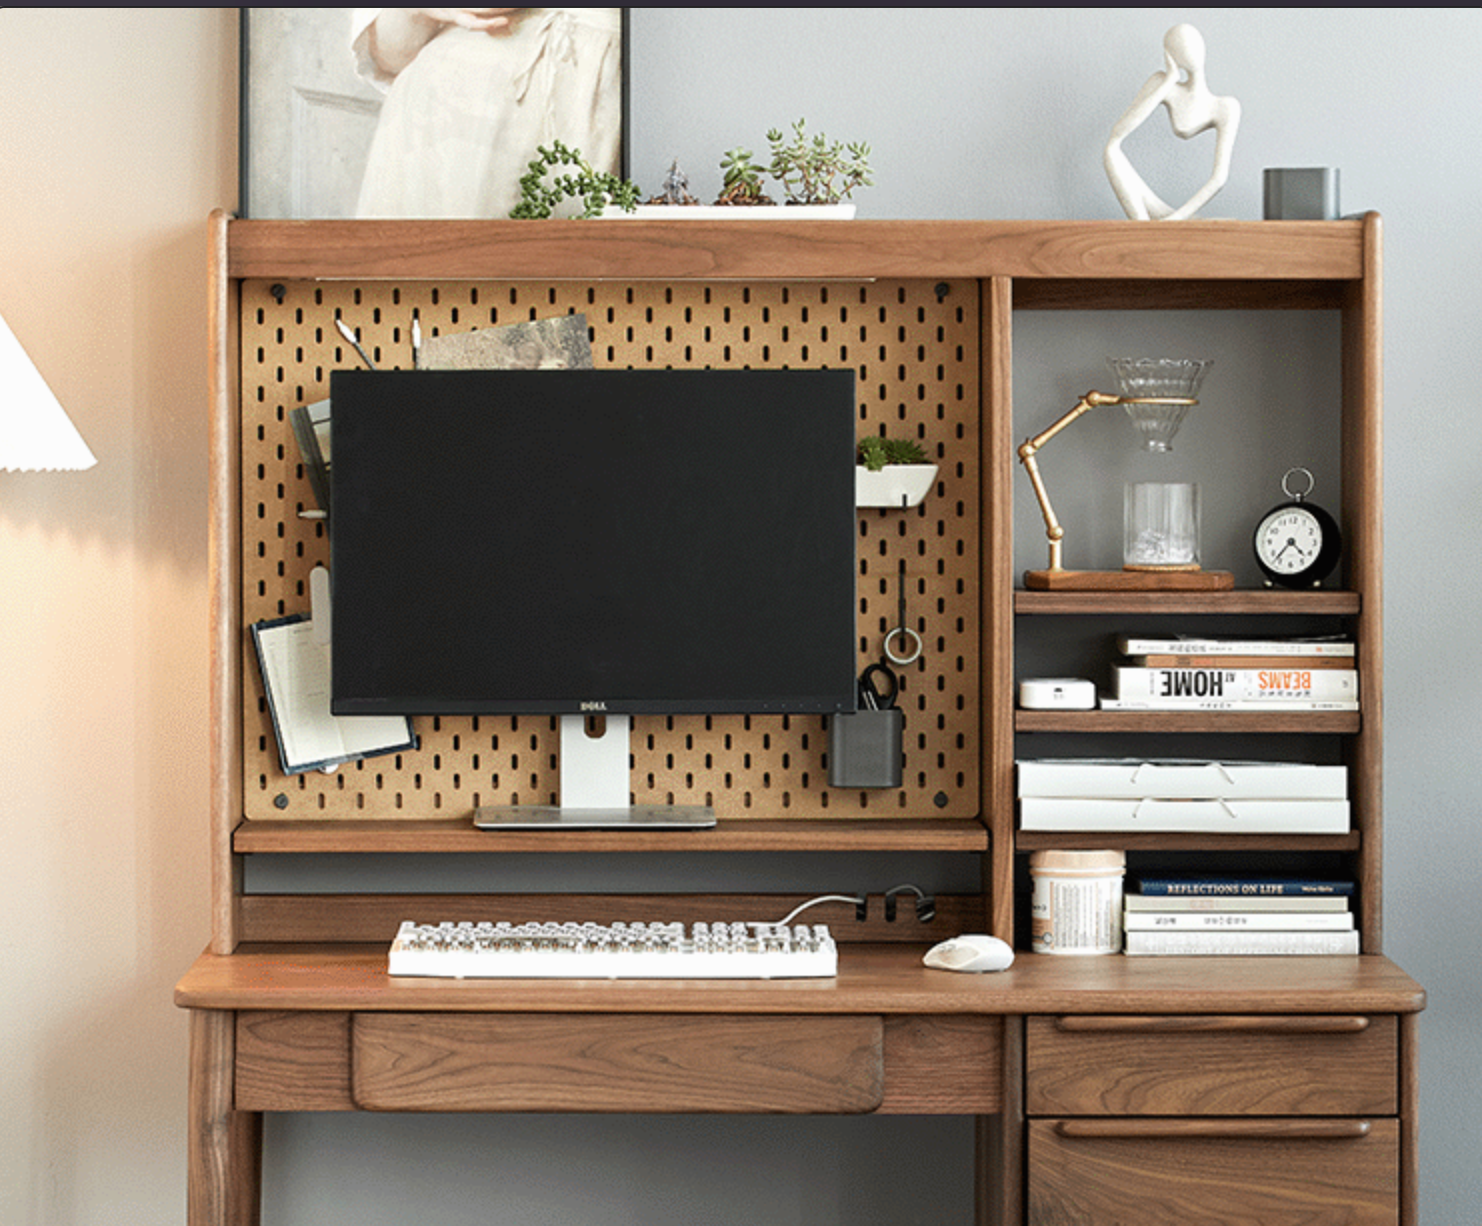 Massiver Walnuss-Schreibtisch mit Hutch, schwarzer Walnussholz-Schreibtisch aus Walnussholz